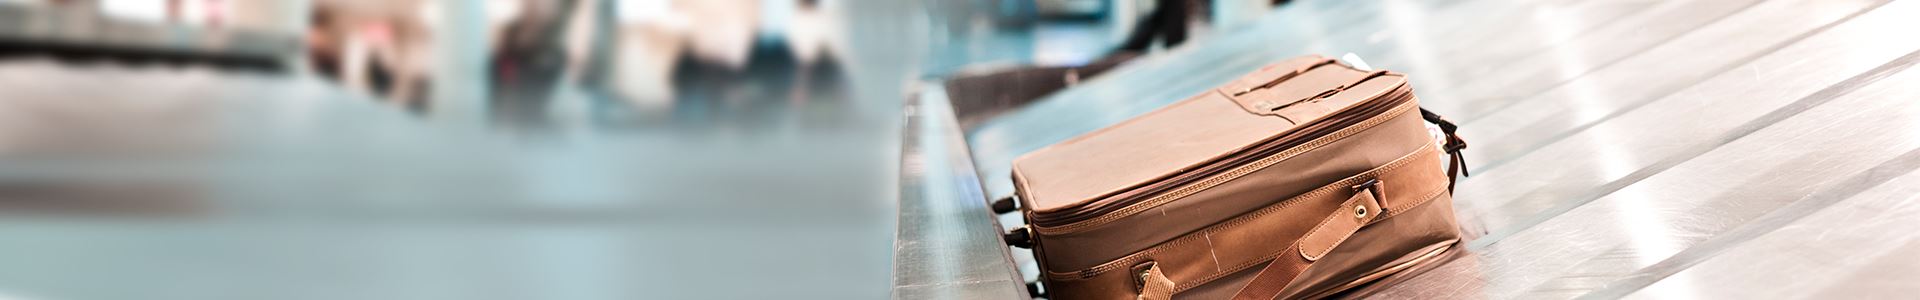 A imagem mostra uma mala marrom em uma esteira de bagagem em um aeroporto. Não há outras malas junto a ela.